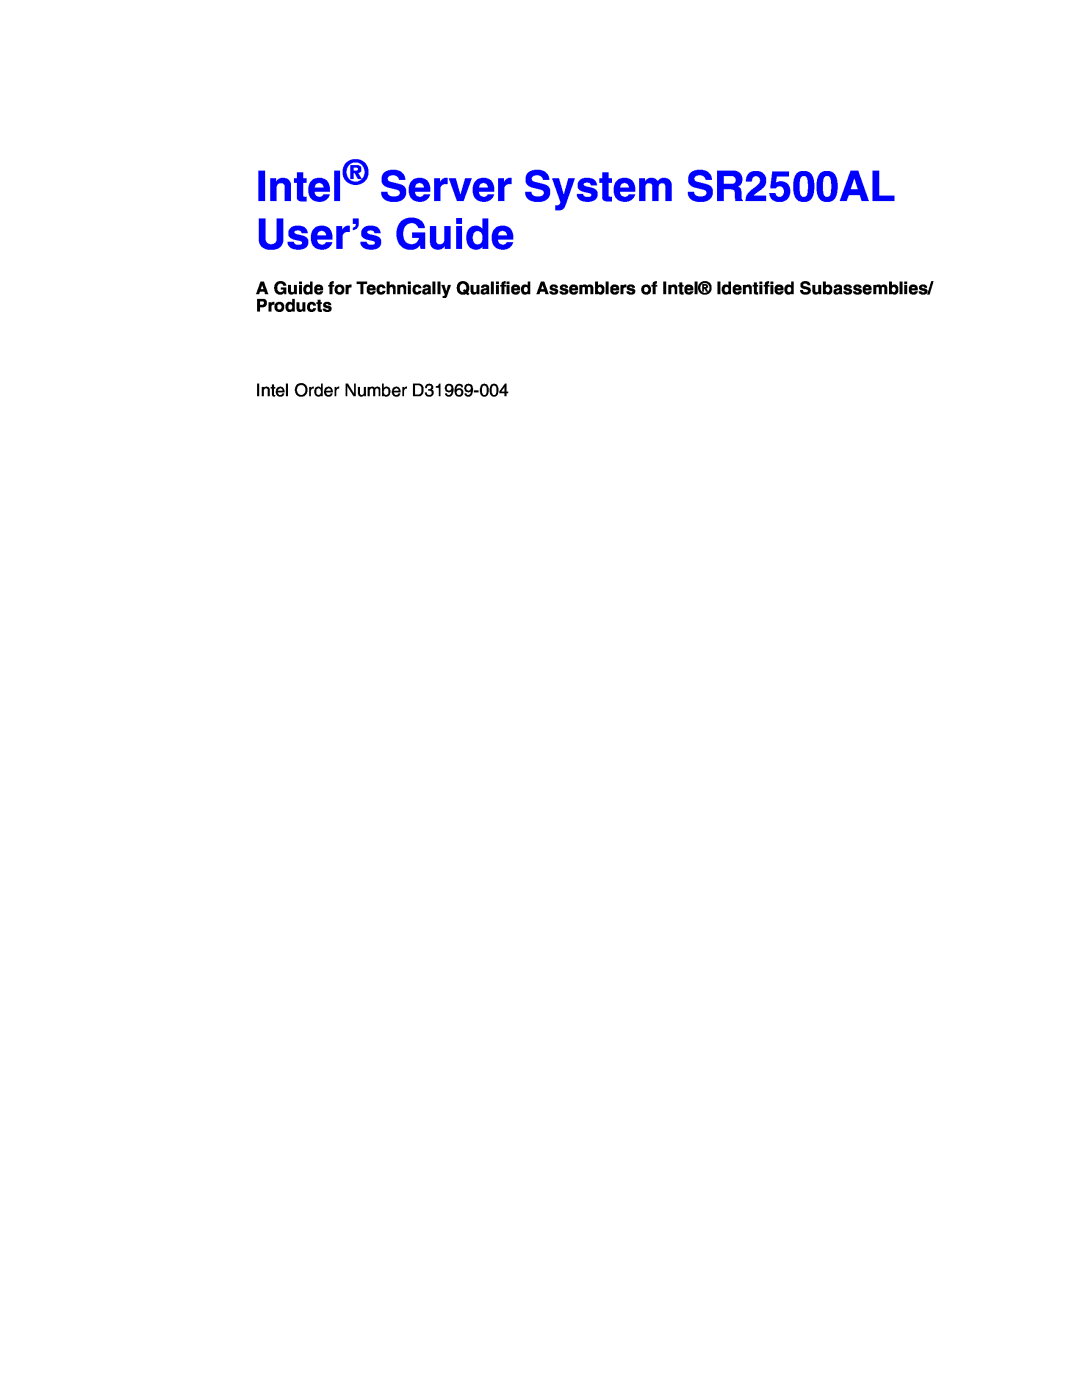 Intel manual Intel Server System SR2500AL User’s Guide, Intel Order Number D31969-004 